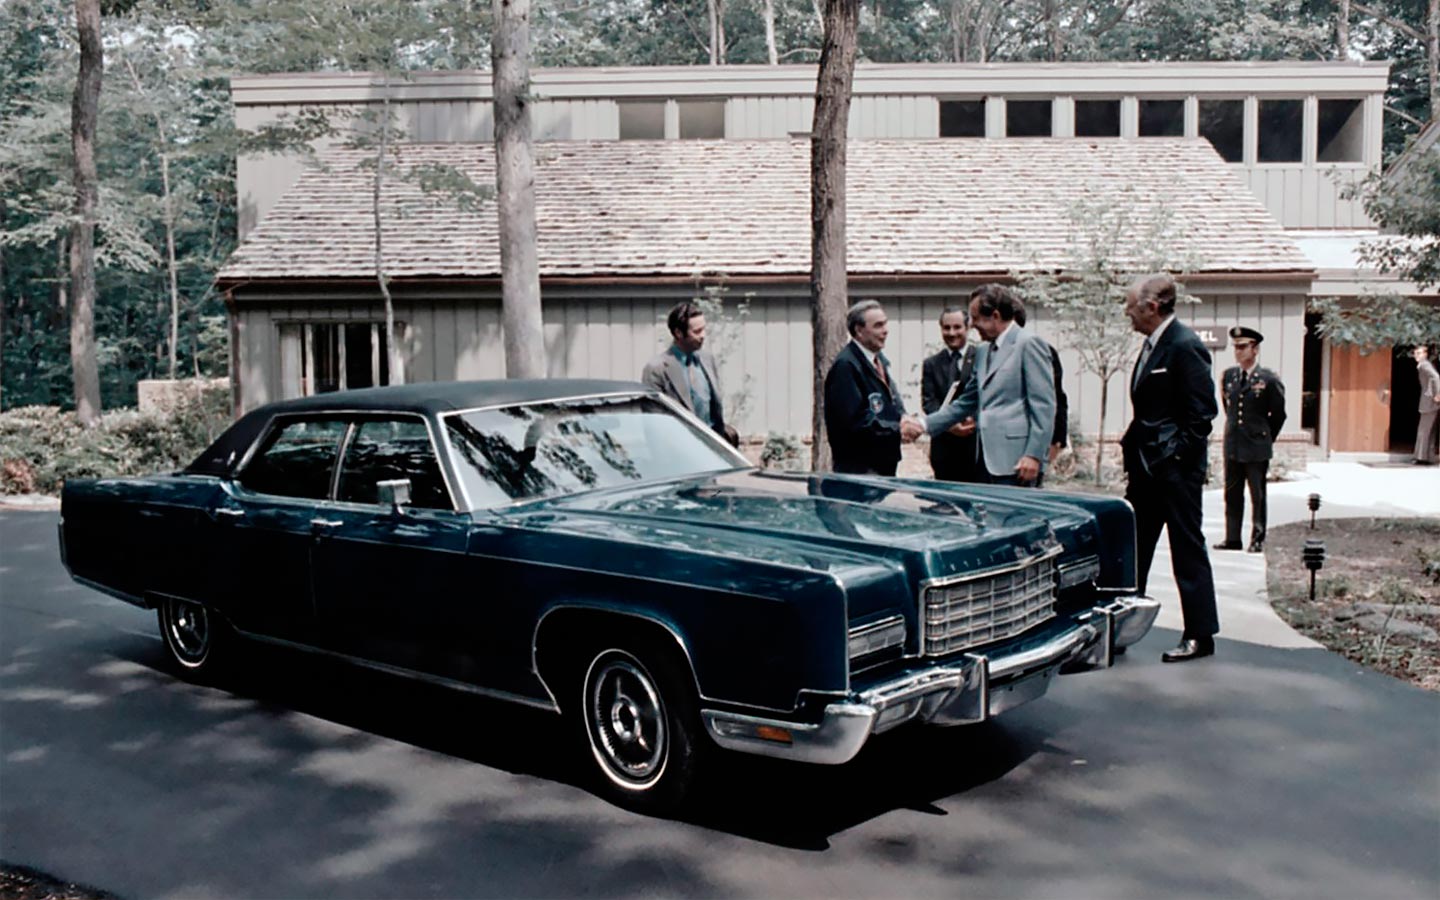 В июне 1973 года в Кэмп-Дэвиде состоялась очередная встреча лидеров (первая в США!), на которой Никсон подарил Брежневу Lincoln Continental.